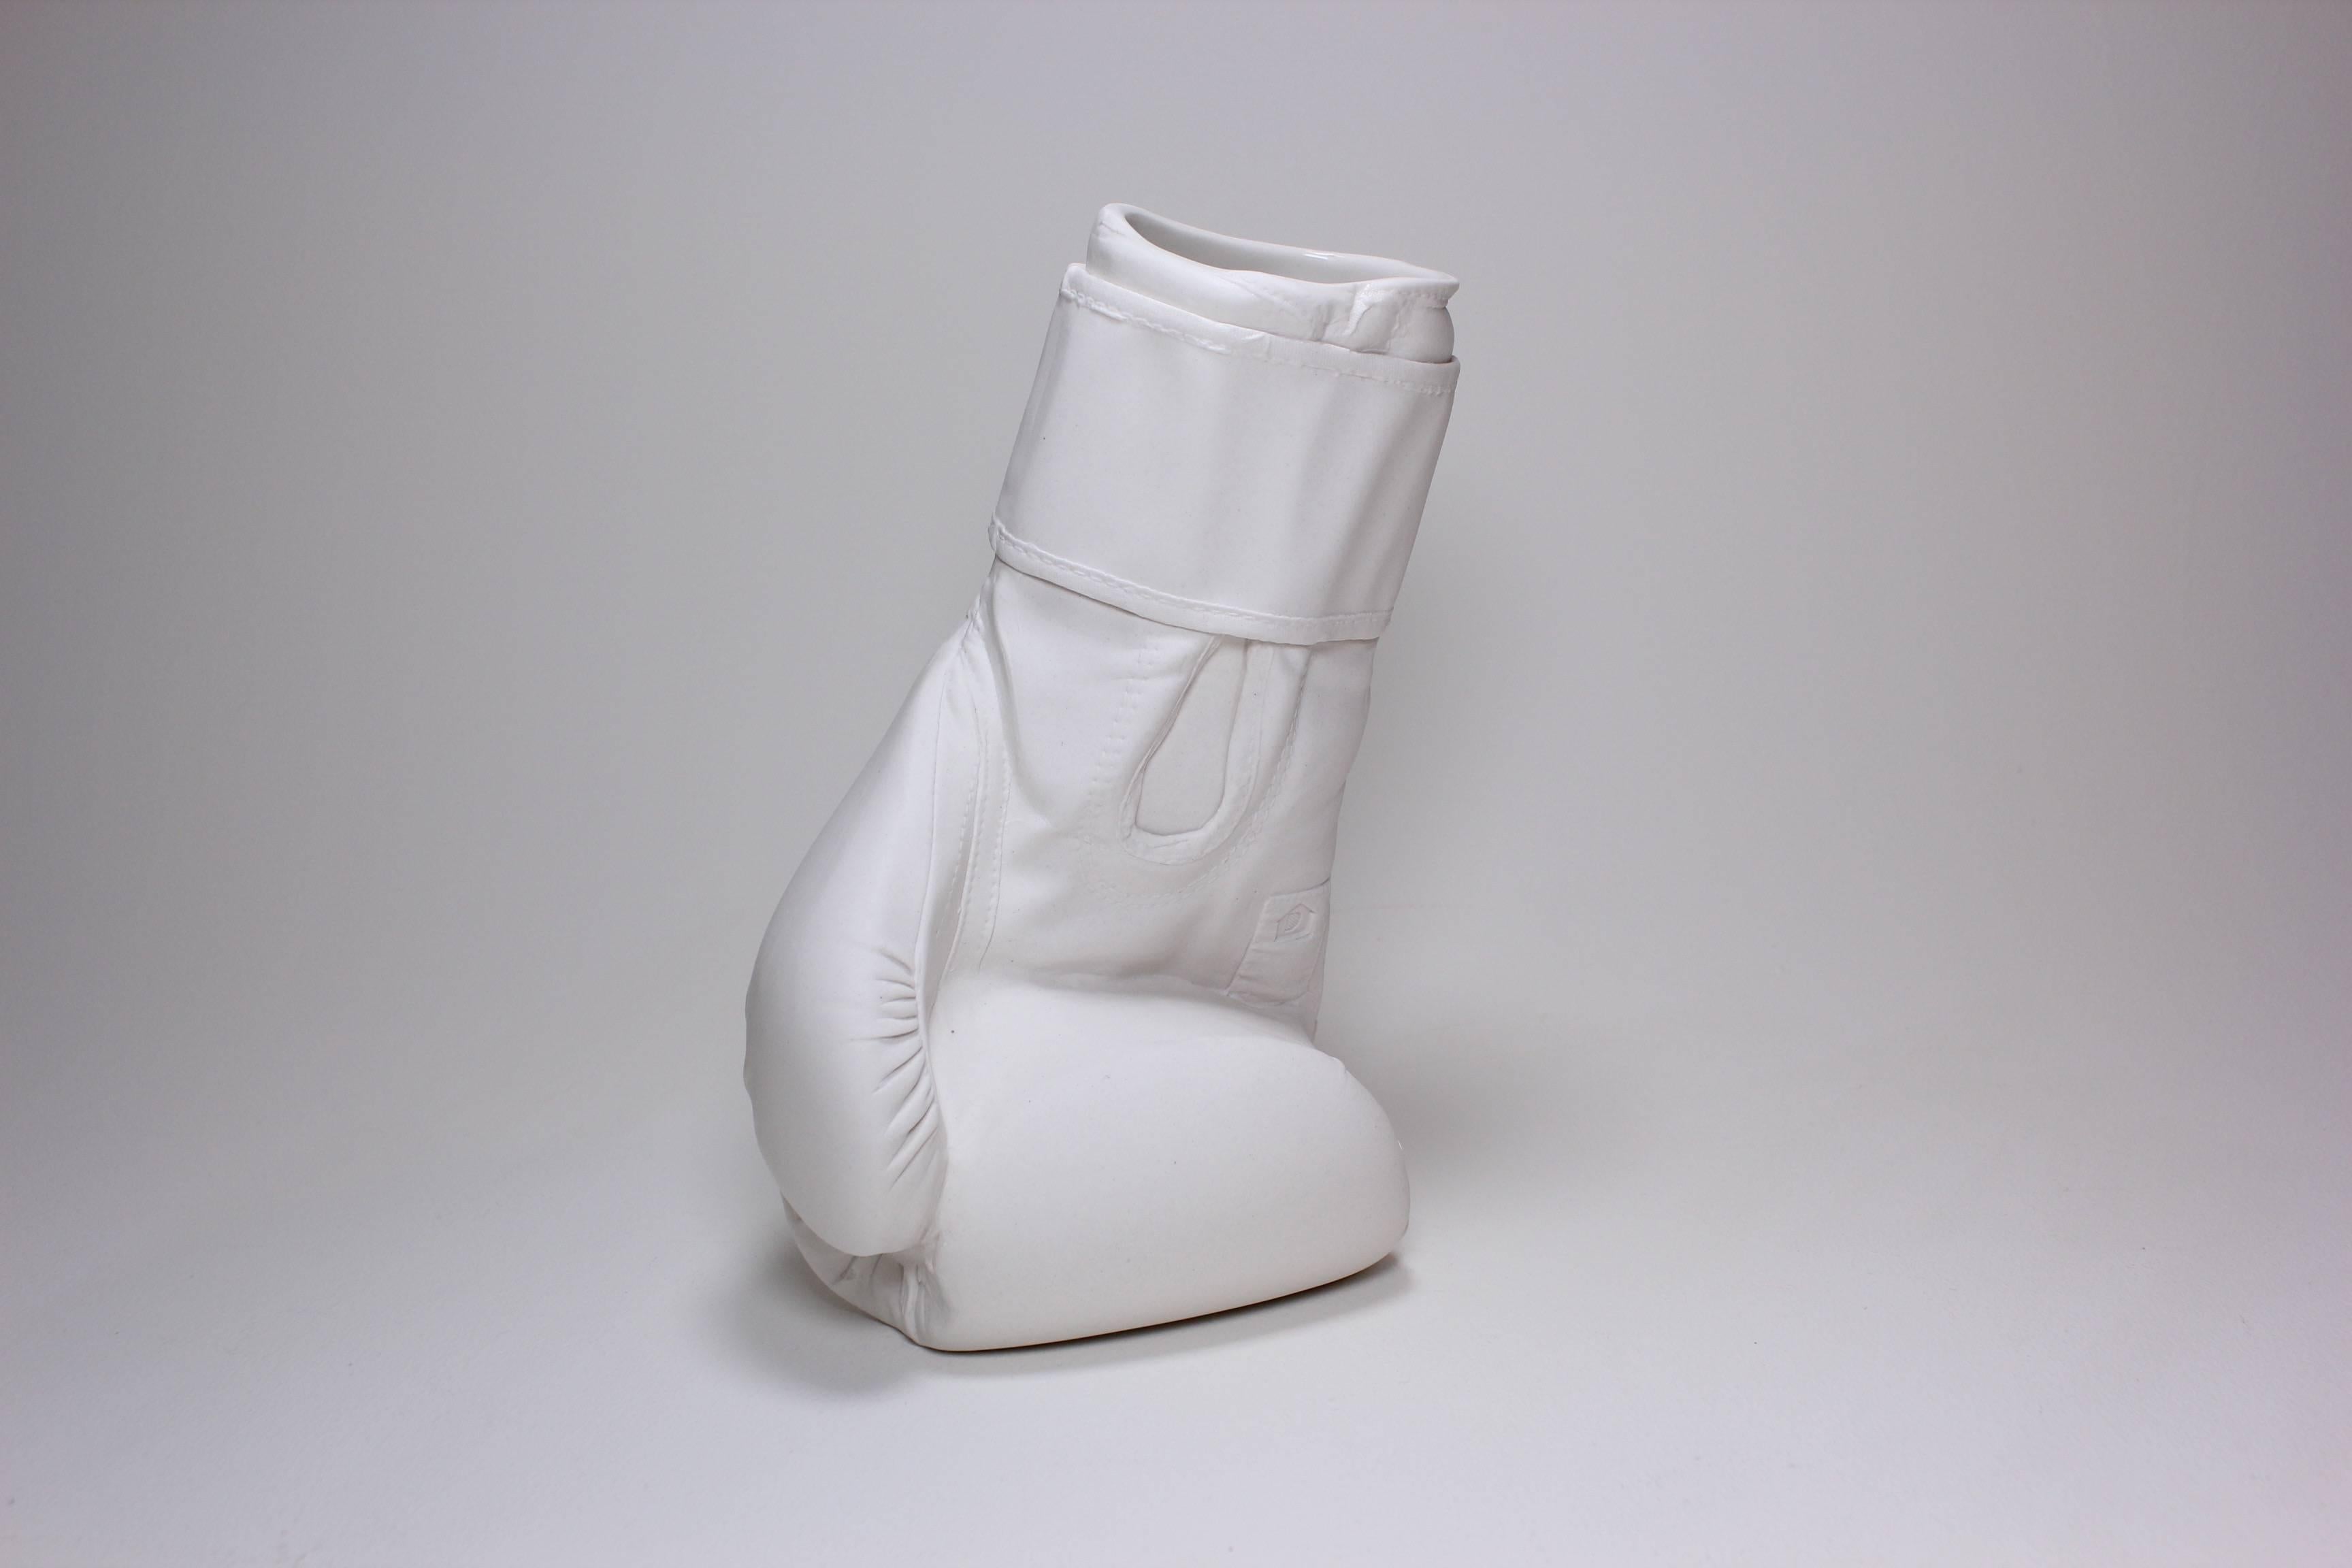 Brock DeBoer Figurative Sculpture - 1, 2 Vase